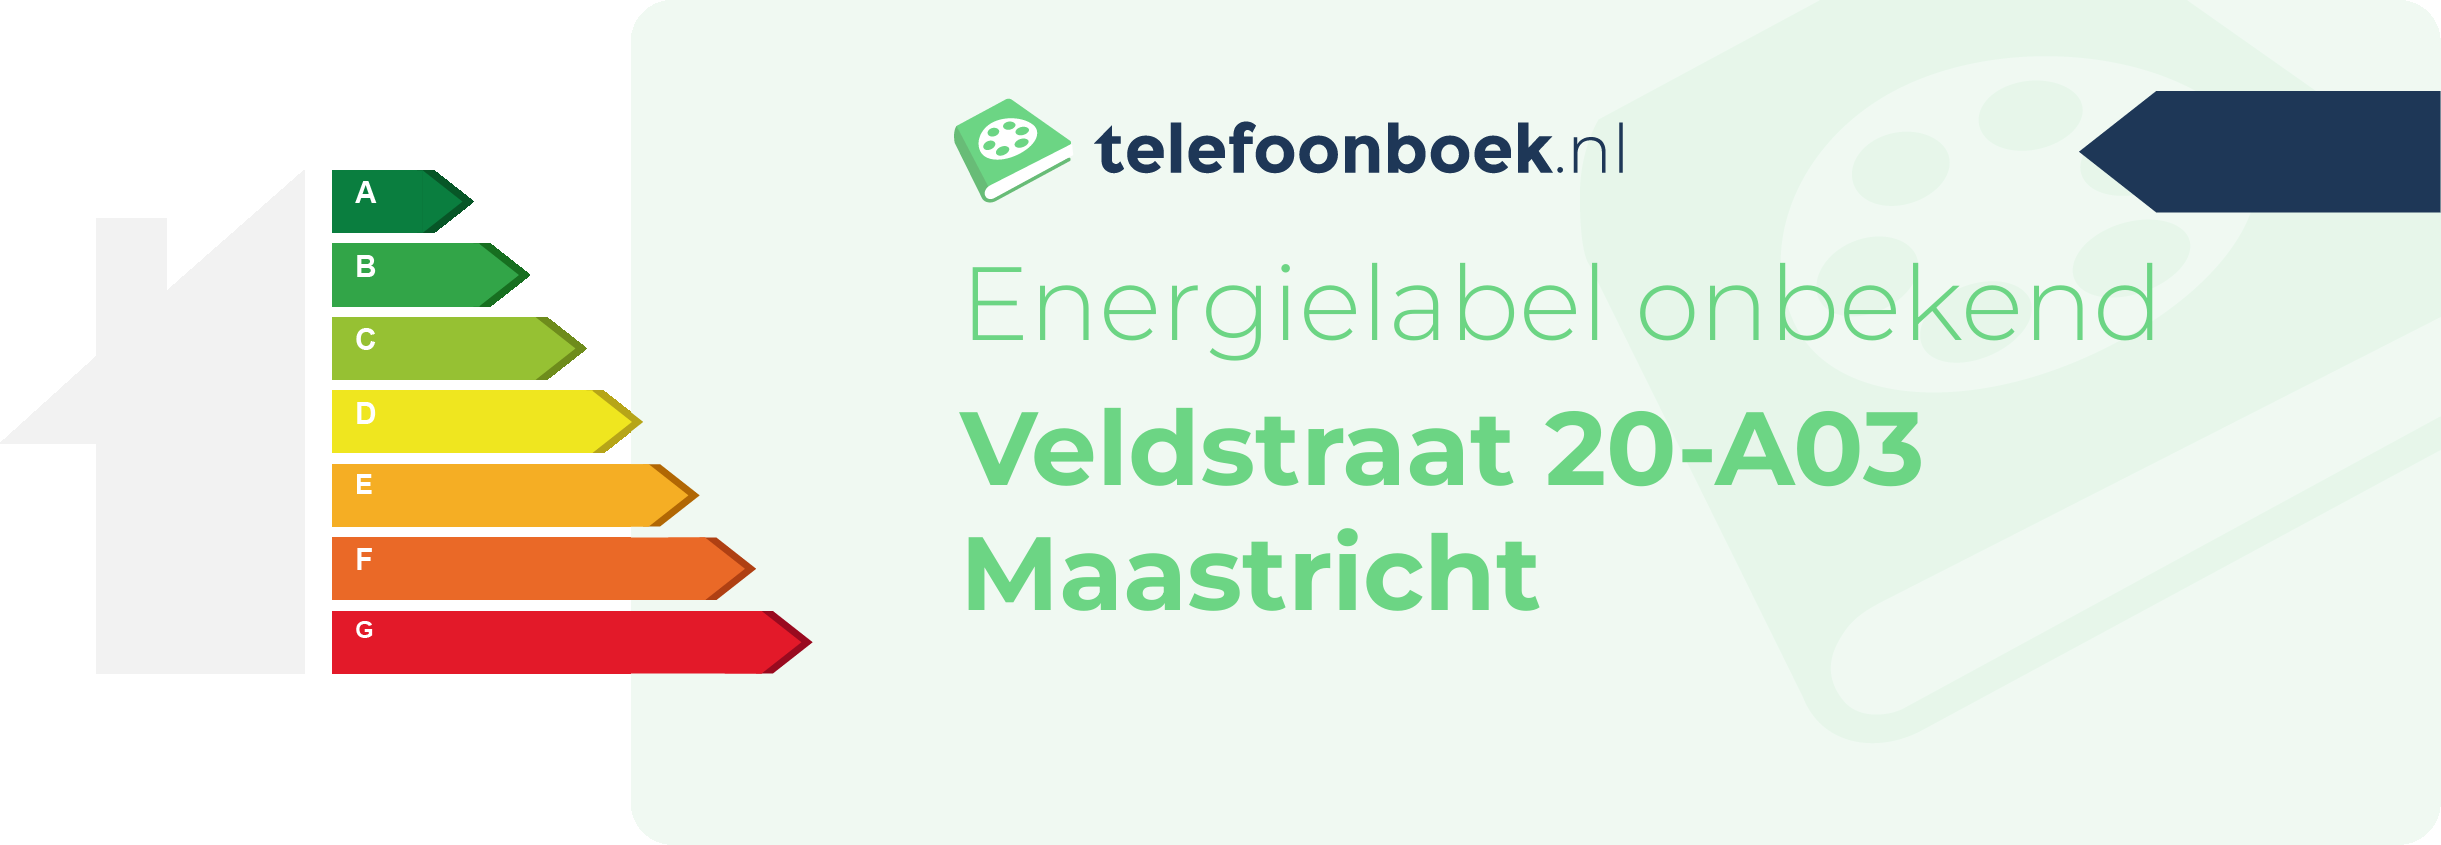 Energielabel Veldstraat 20-A03 Maastricht